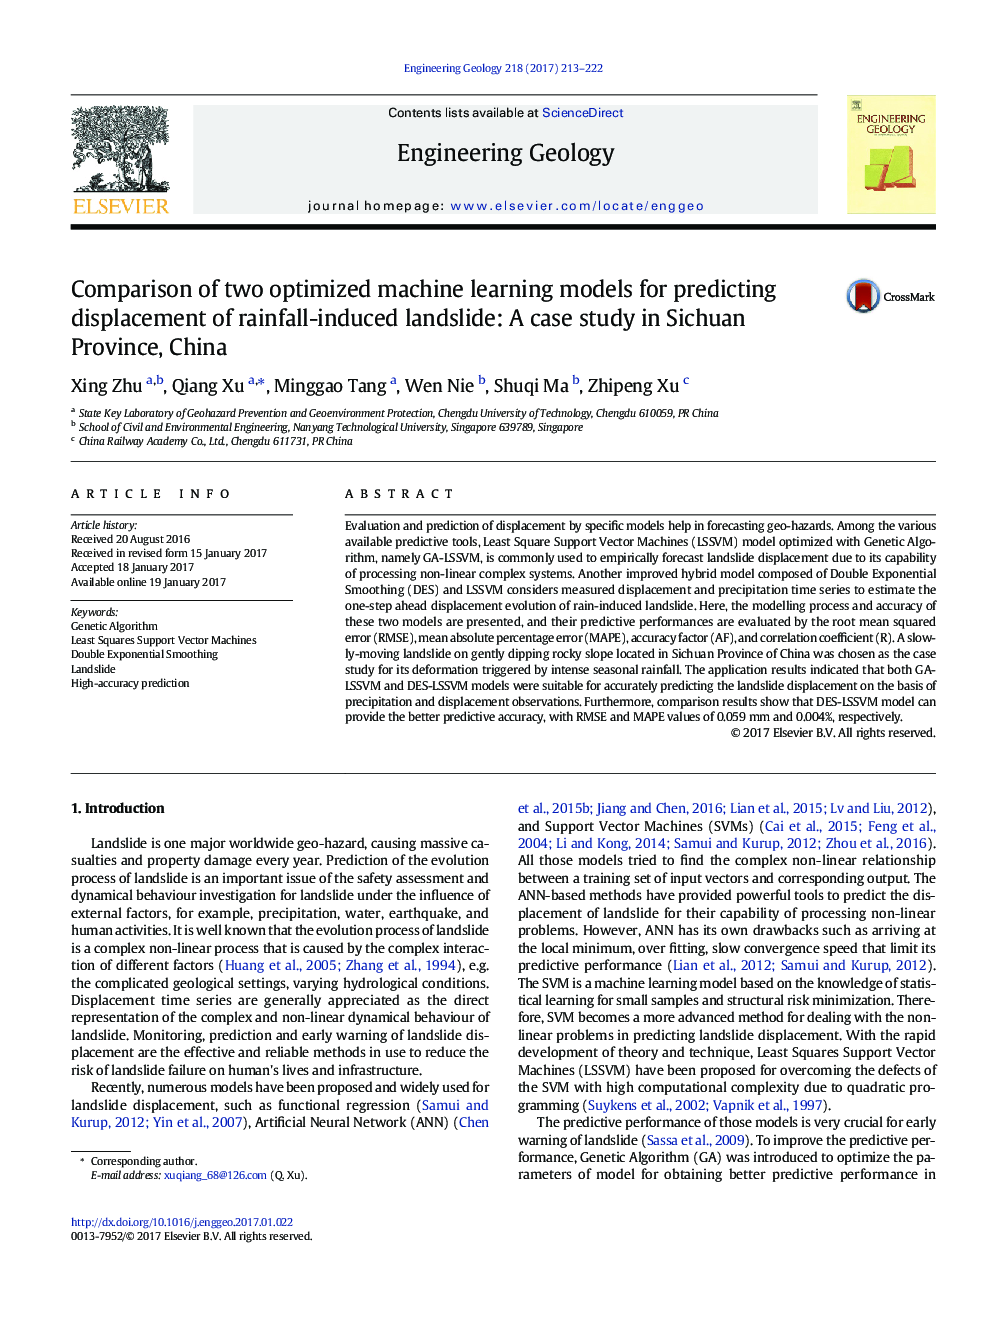 مقایسه دو مدل بهینه سازی ماشین های یادگیری برای پیش بینی جابجایی لغزش های ناشی از بارش: مطالعه موردی در استان سیچوان چین